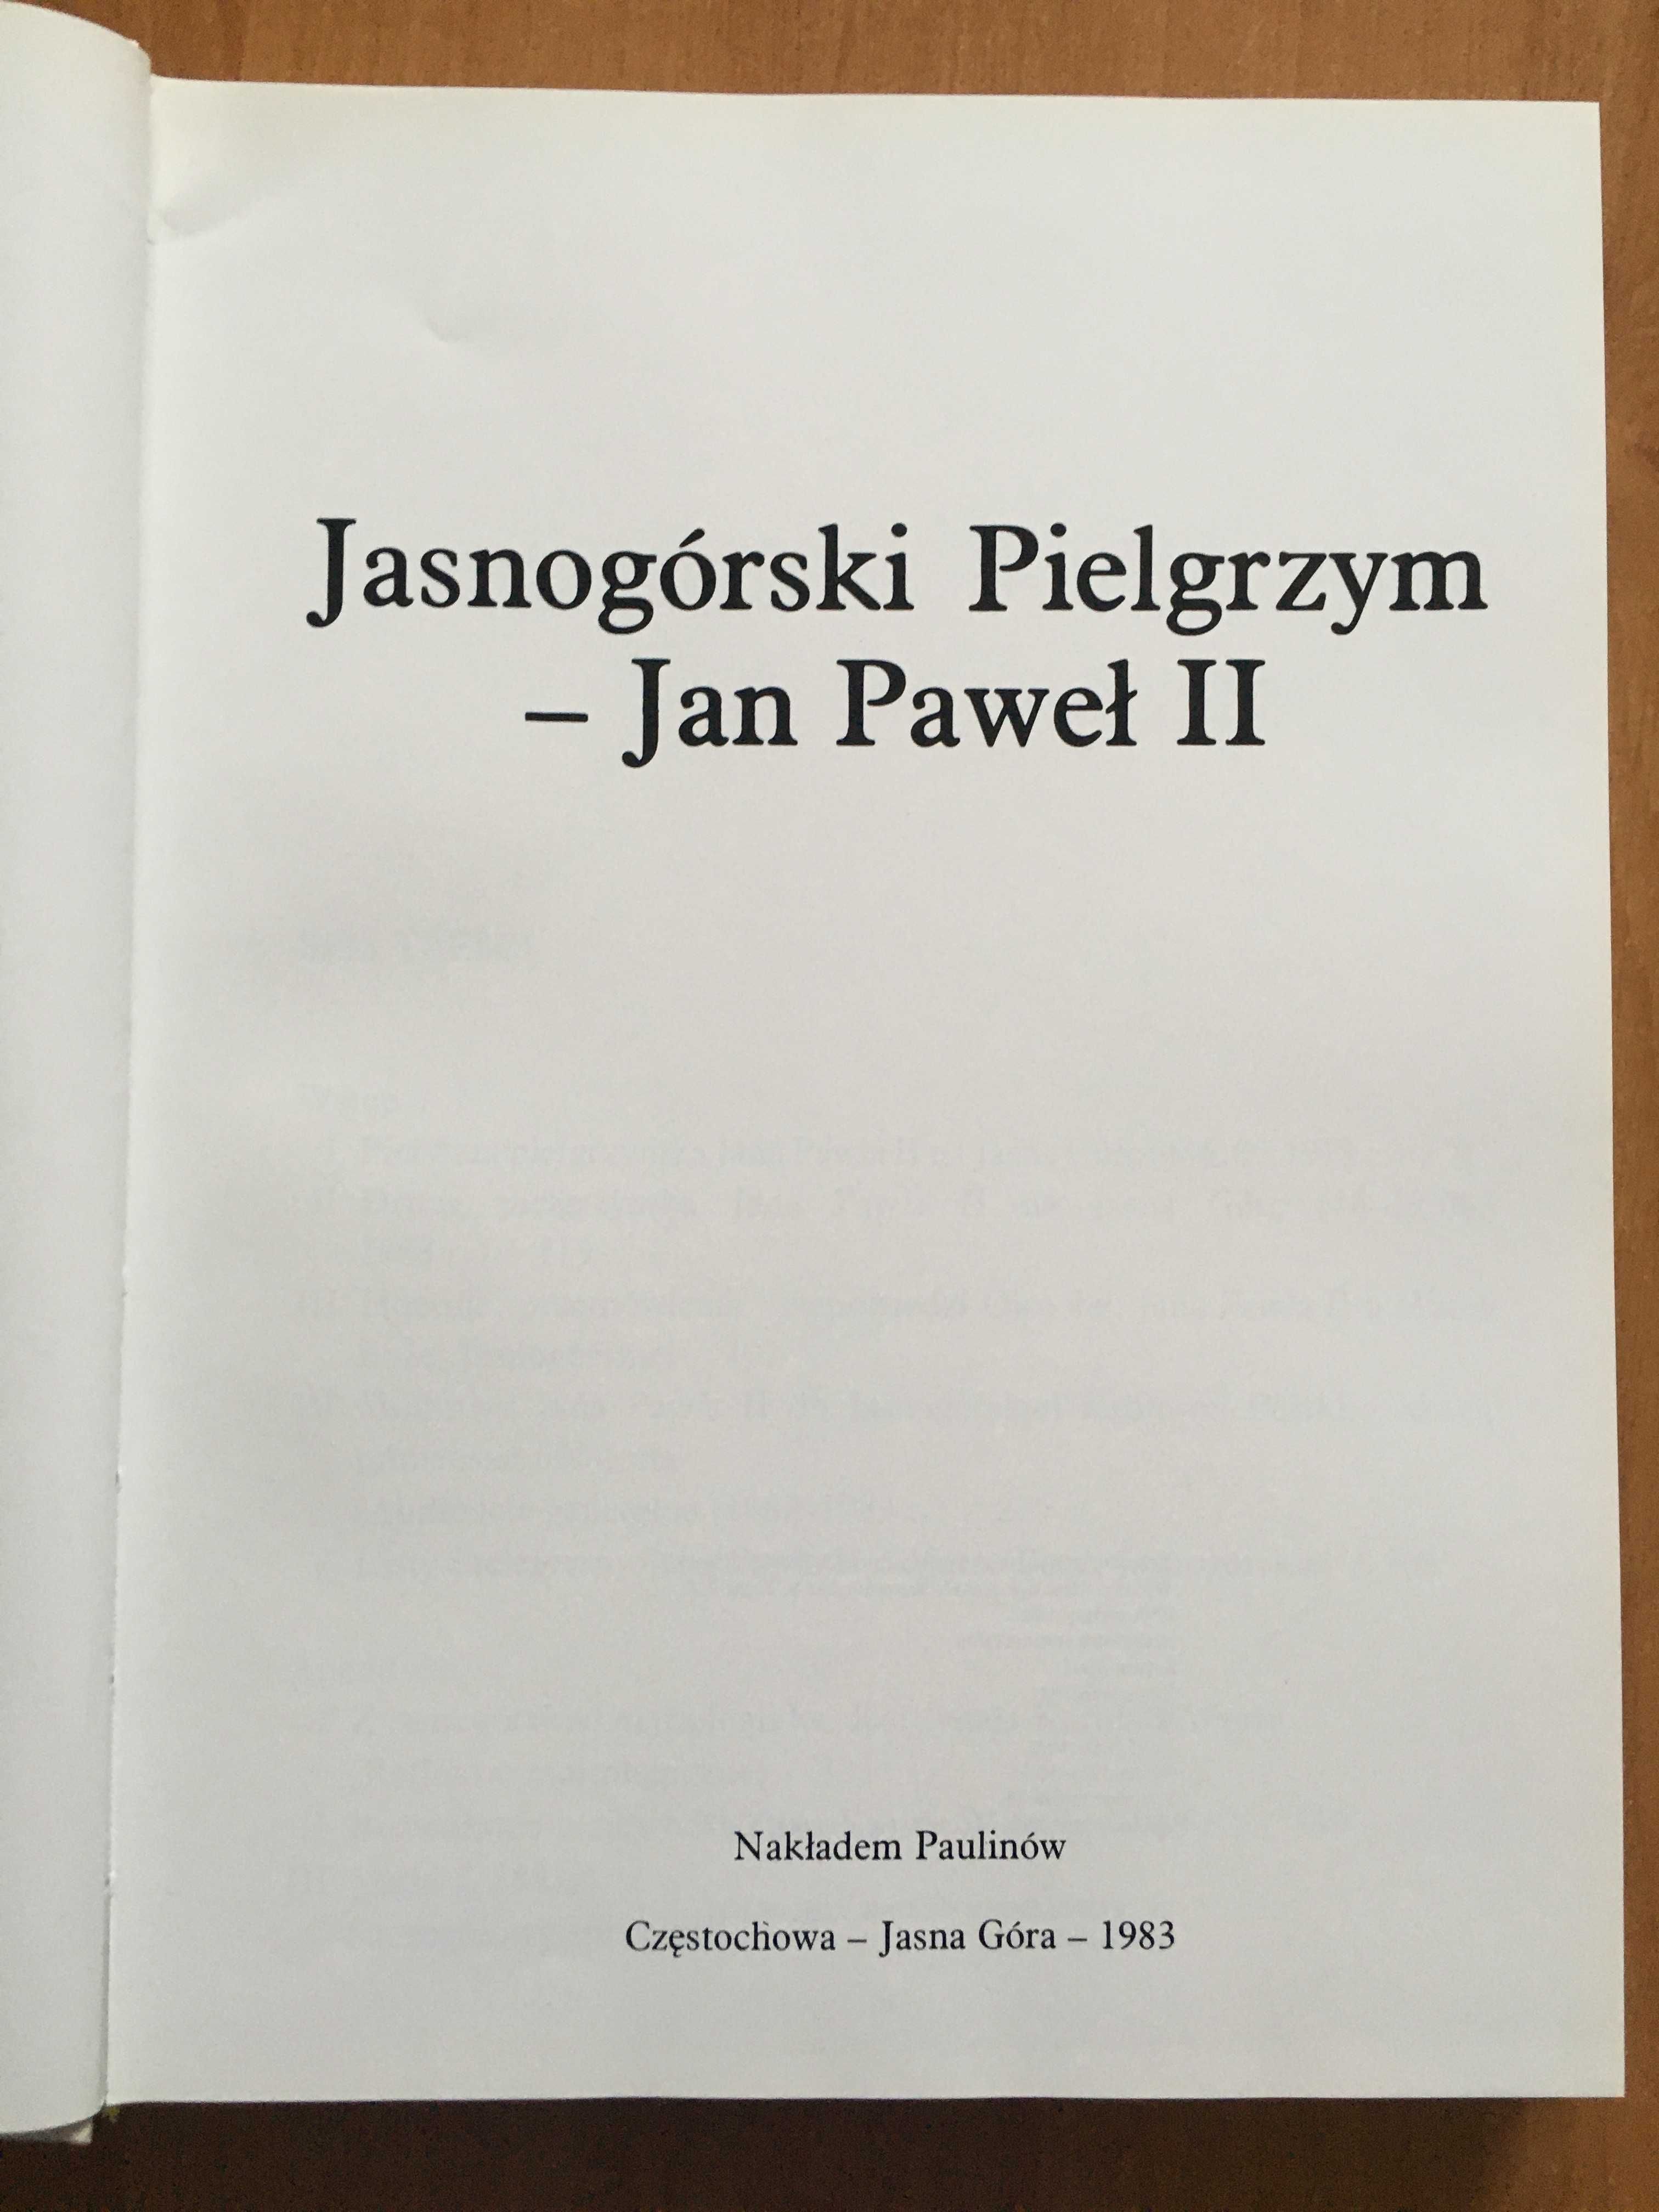 Jasnogórski Pielgrzym - Jan Paweł II 1983